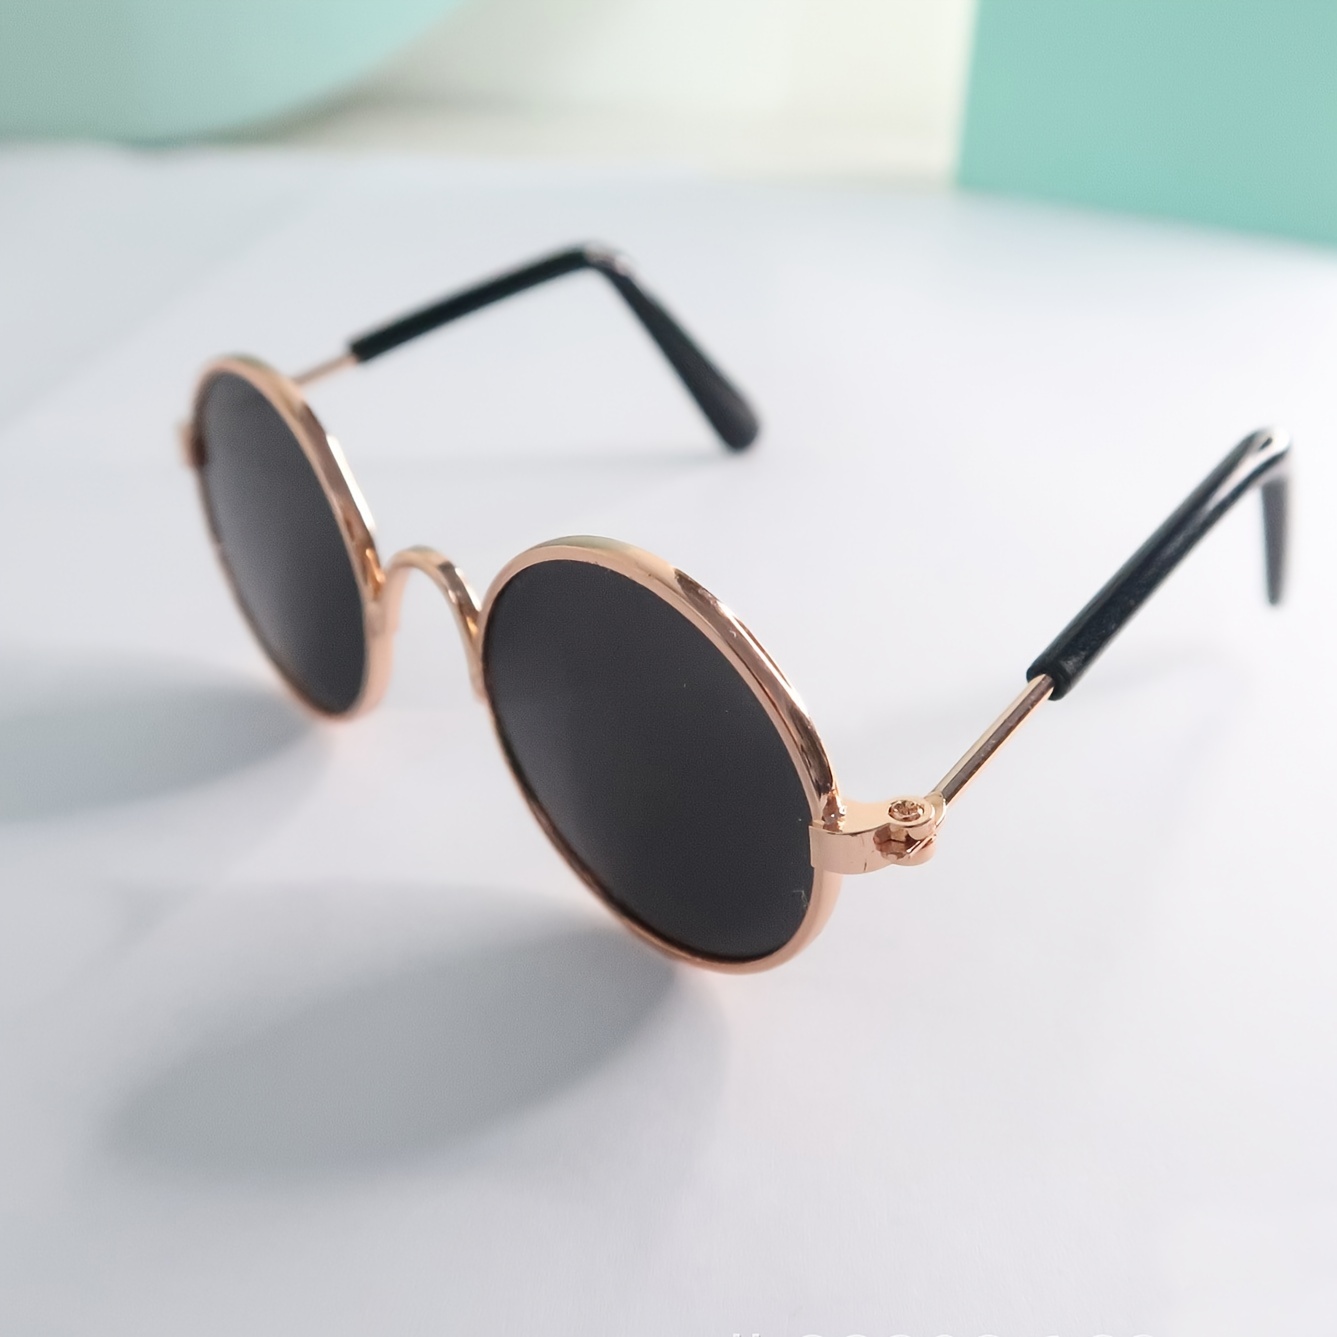 Leash & Necklace Set For Sunglasses